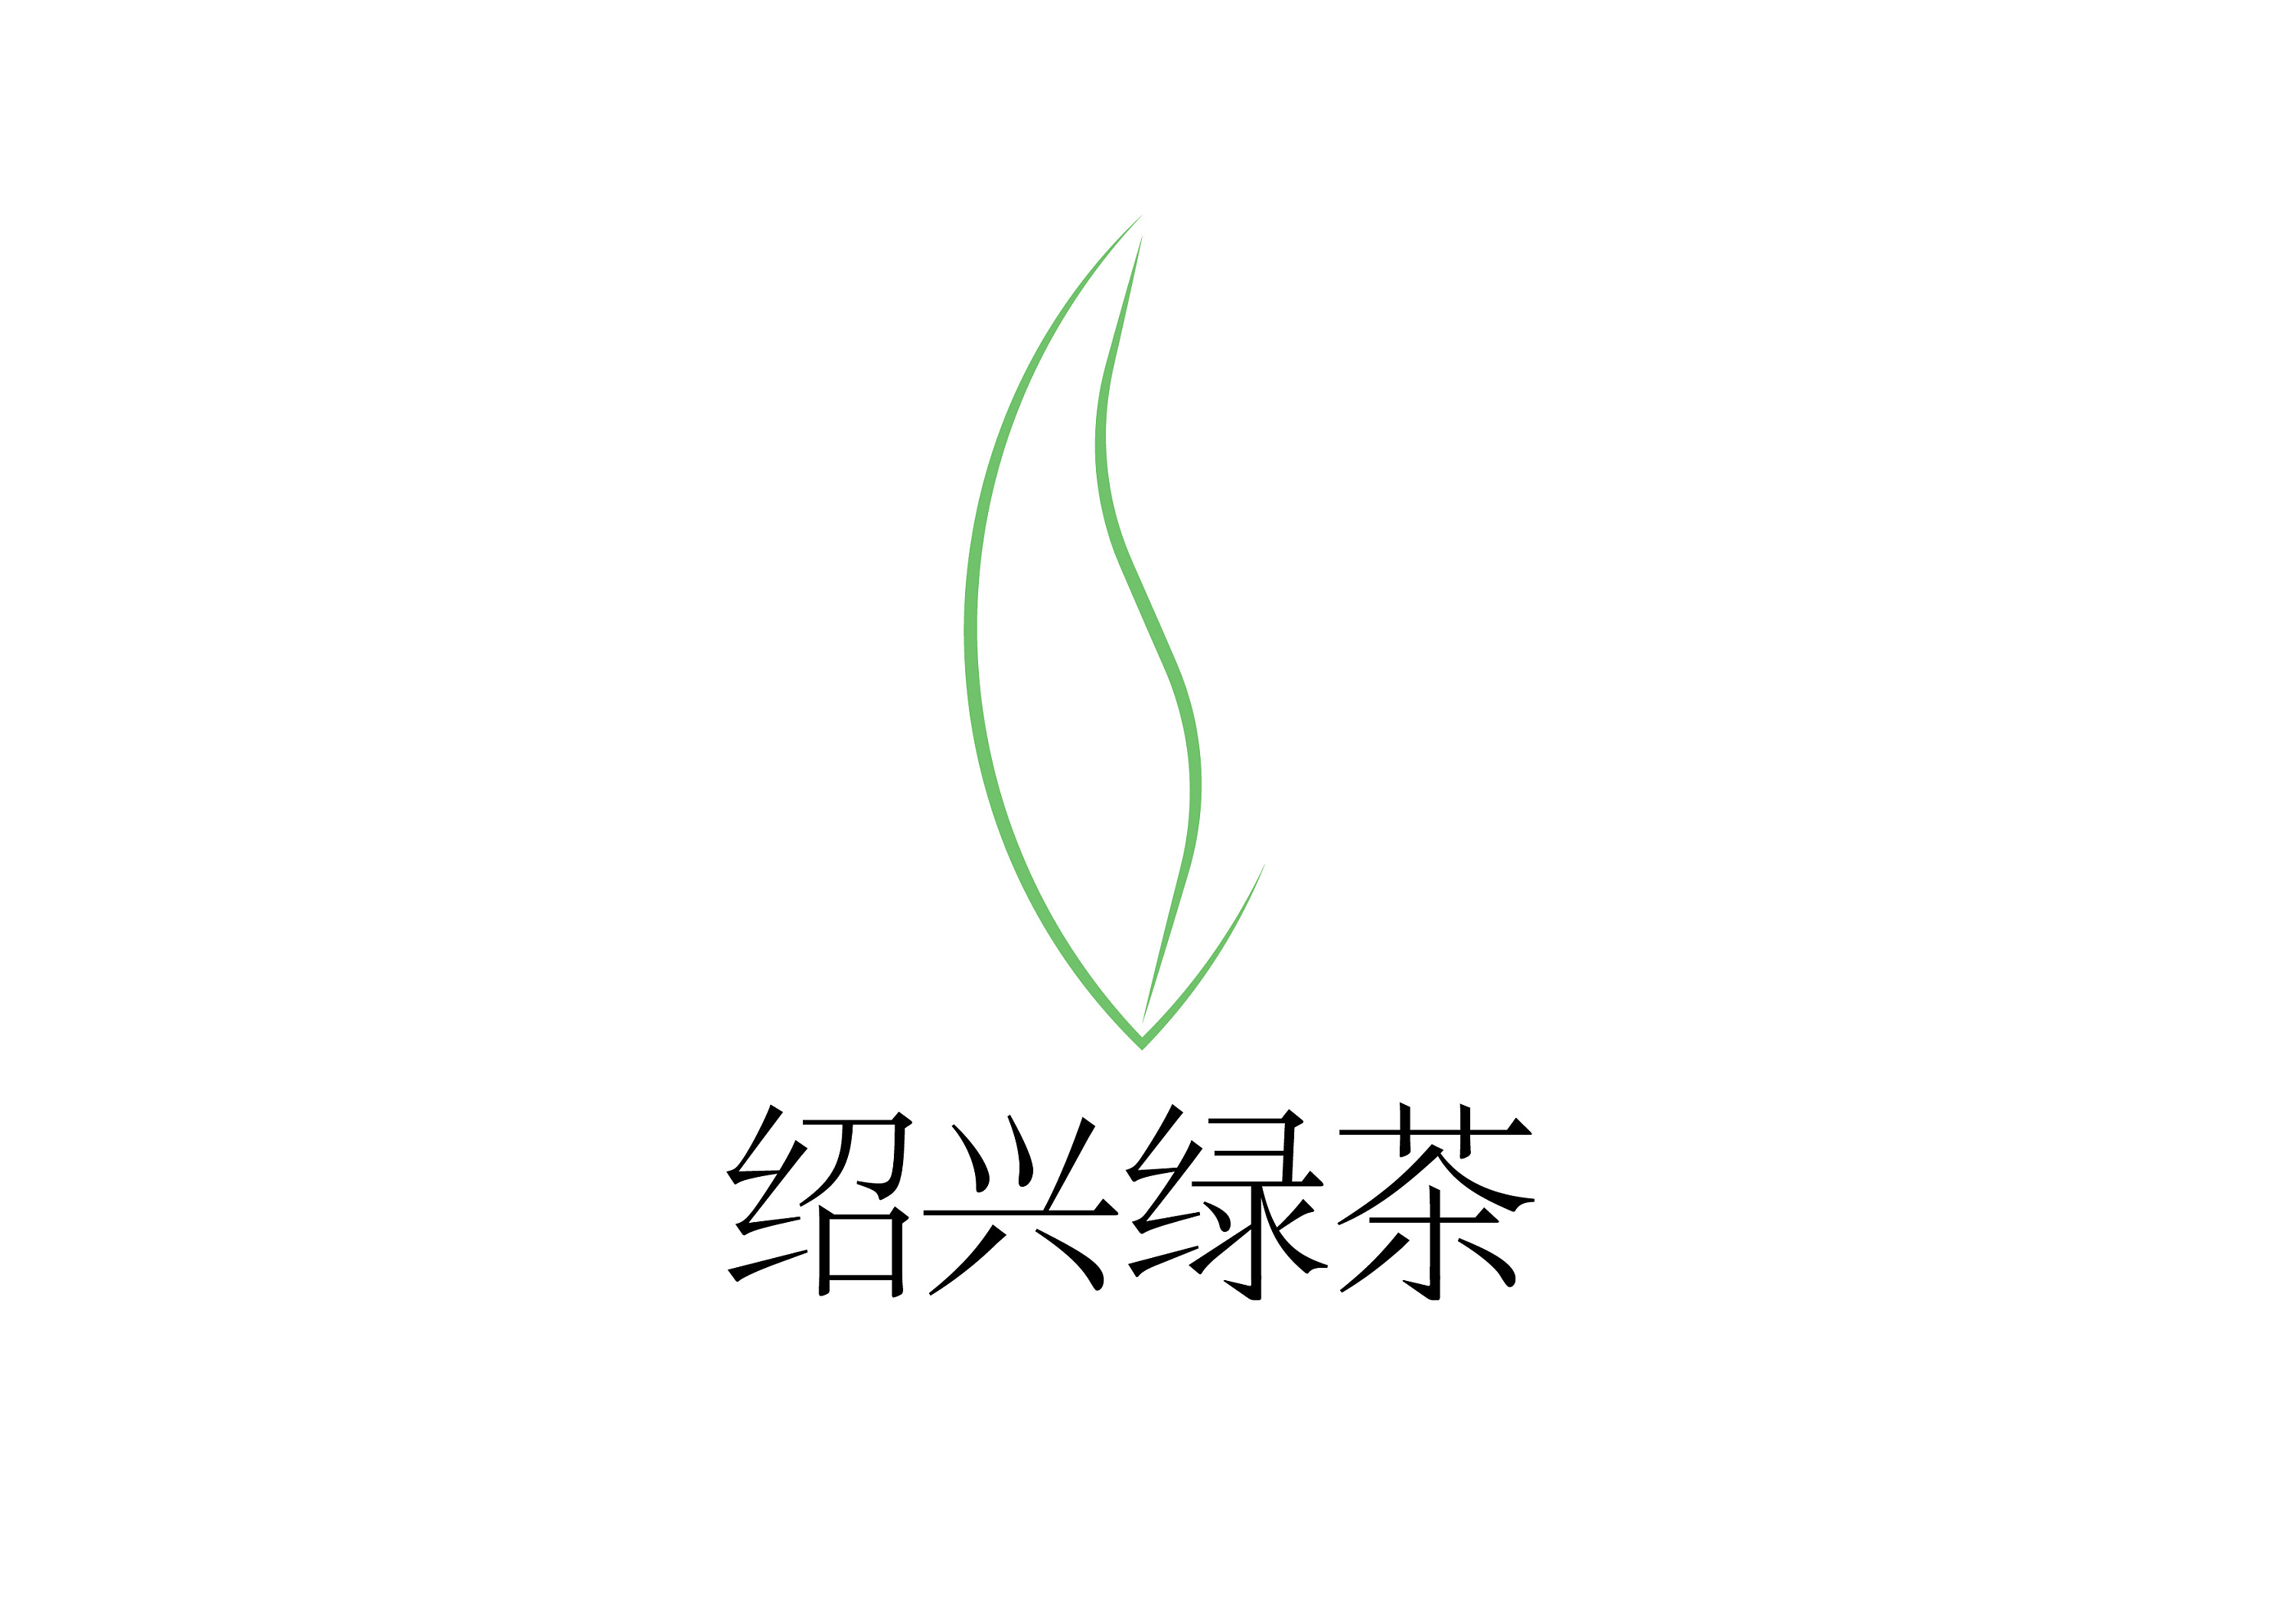 绍兴市绿茶公共品牌名称及logo设计